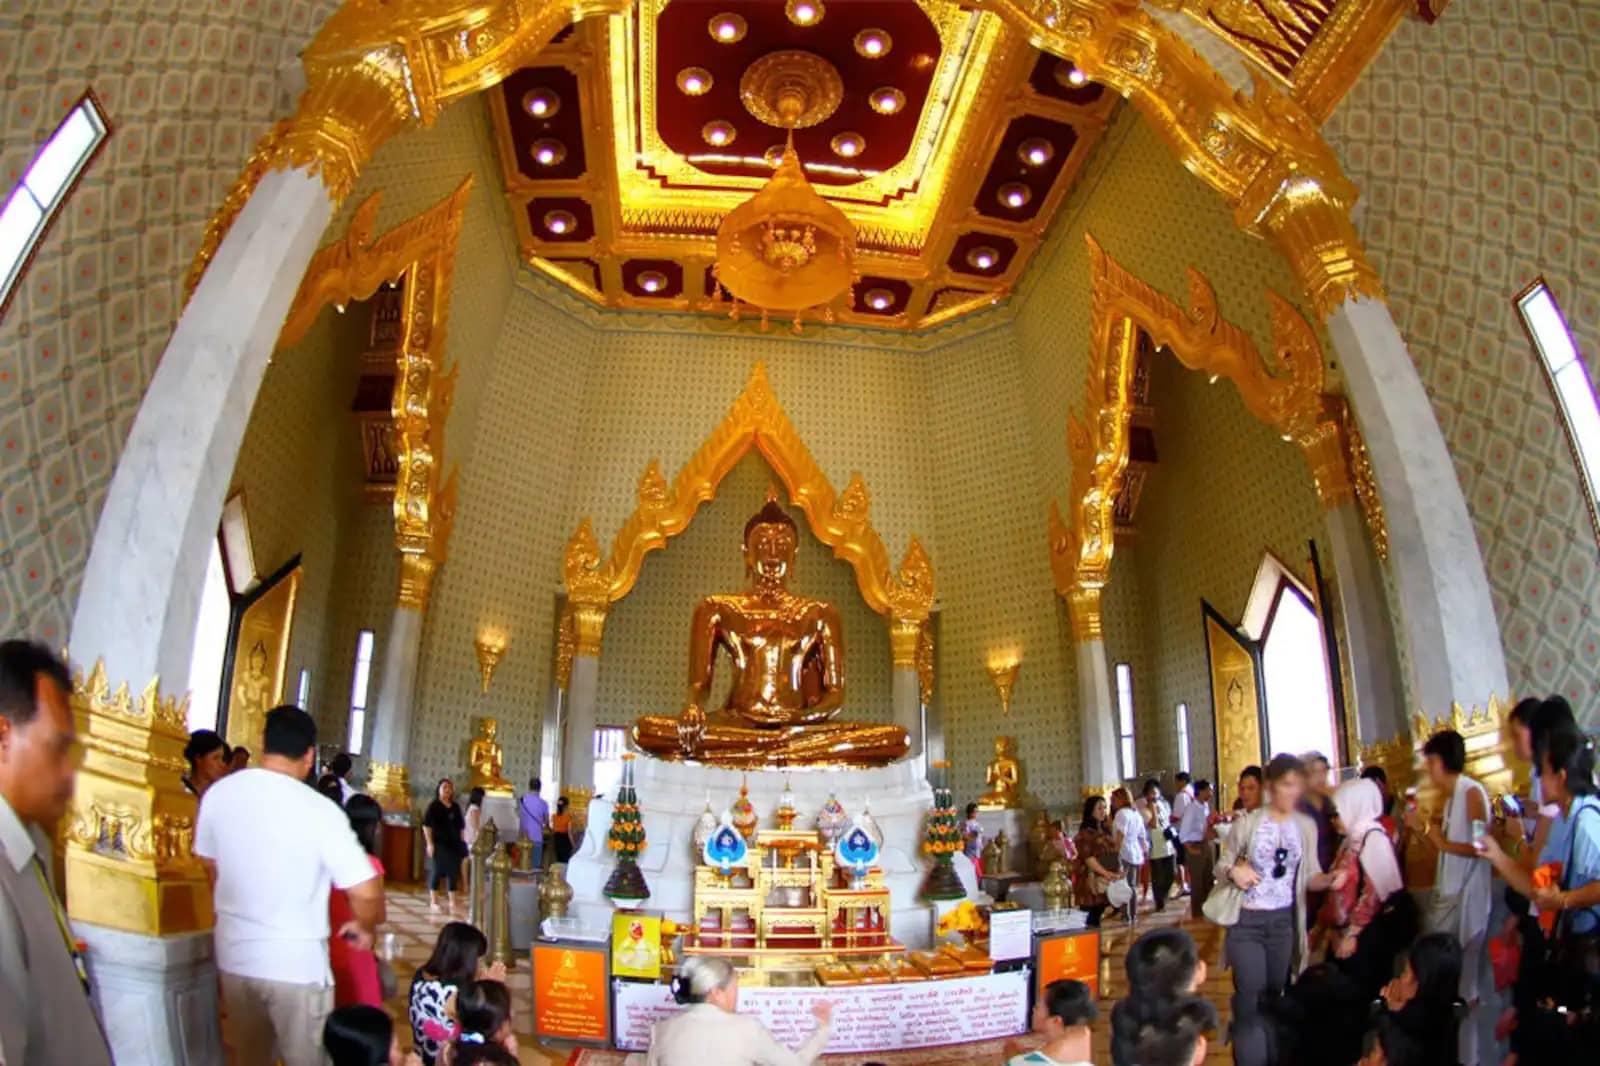 The Golden statue at Wat Traimit, Bangkok